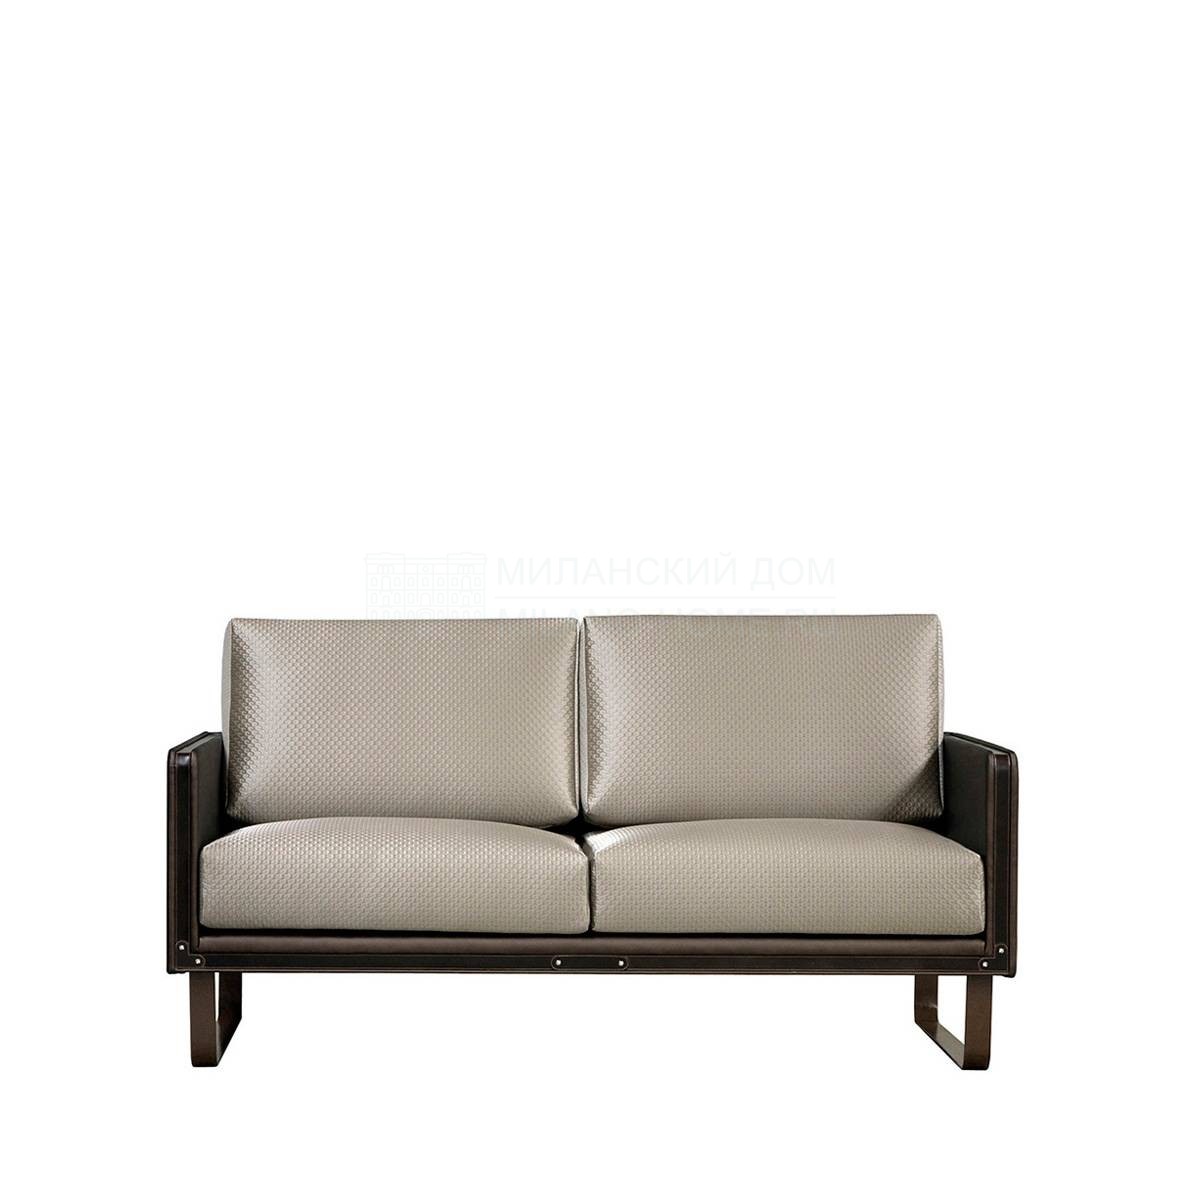 Прямой диван Compass sofa / art.A0749 из Испании фабрики COLECCION ALEXANDRA